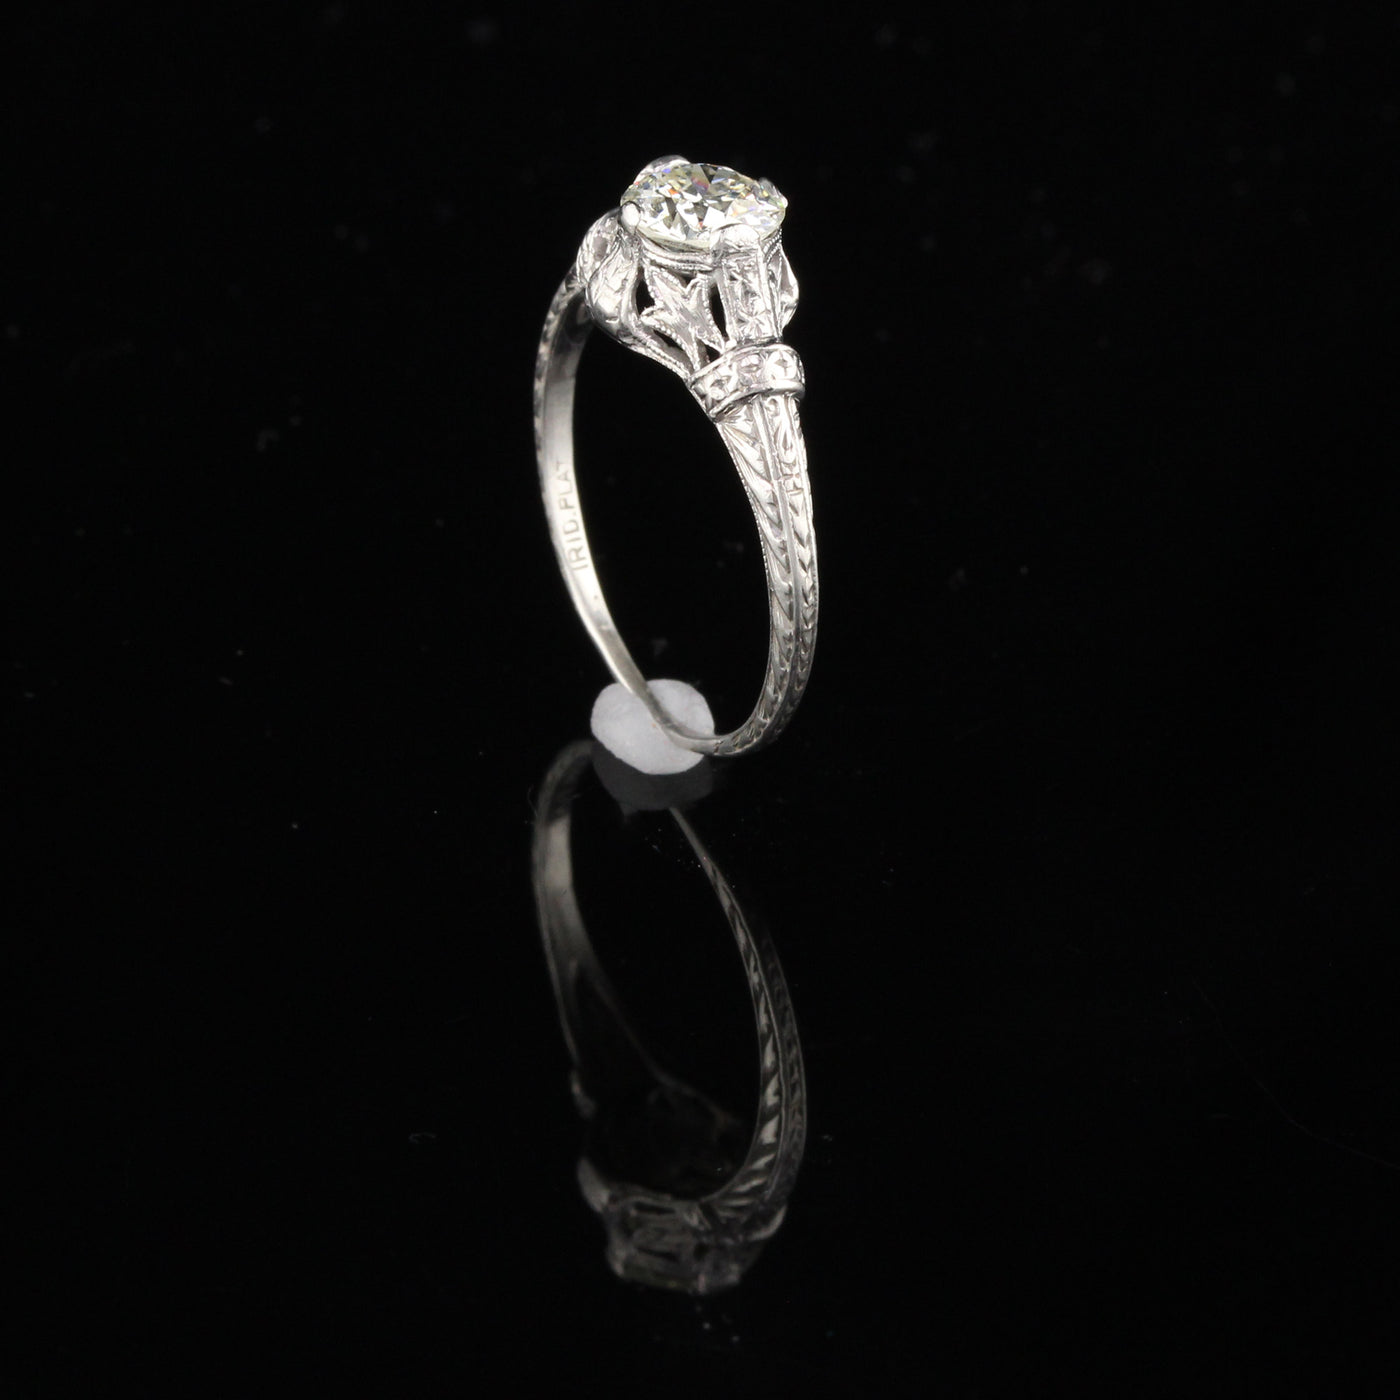 Antique Art Deco Platinum Diamond Engagement Ring - Size 6 3/4